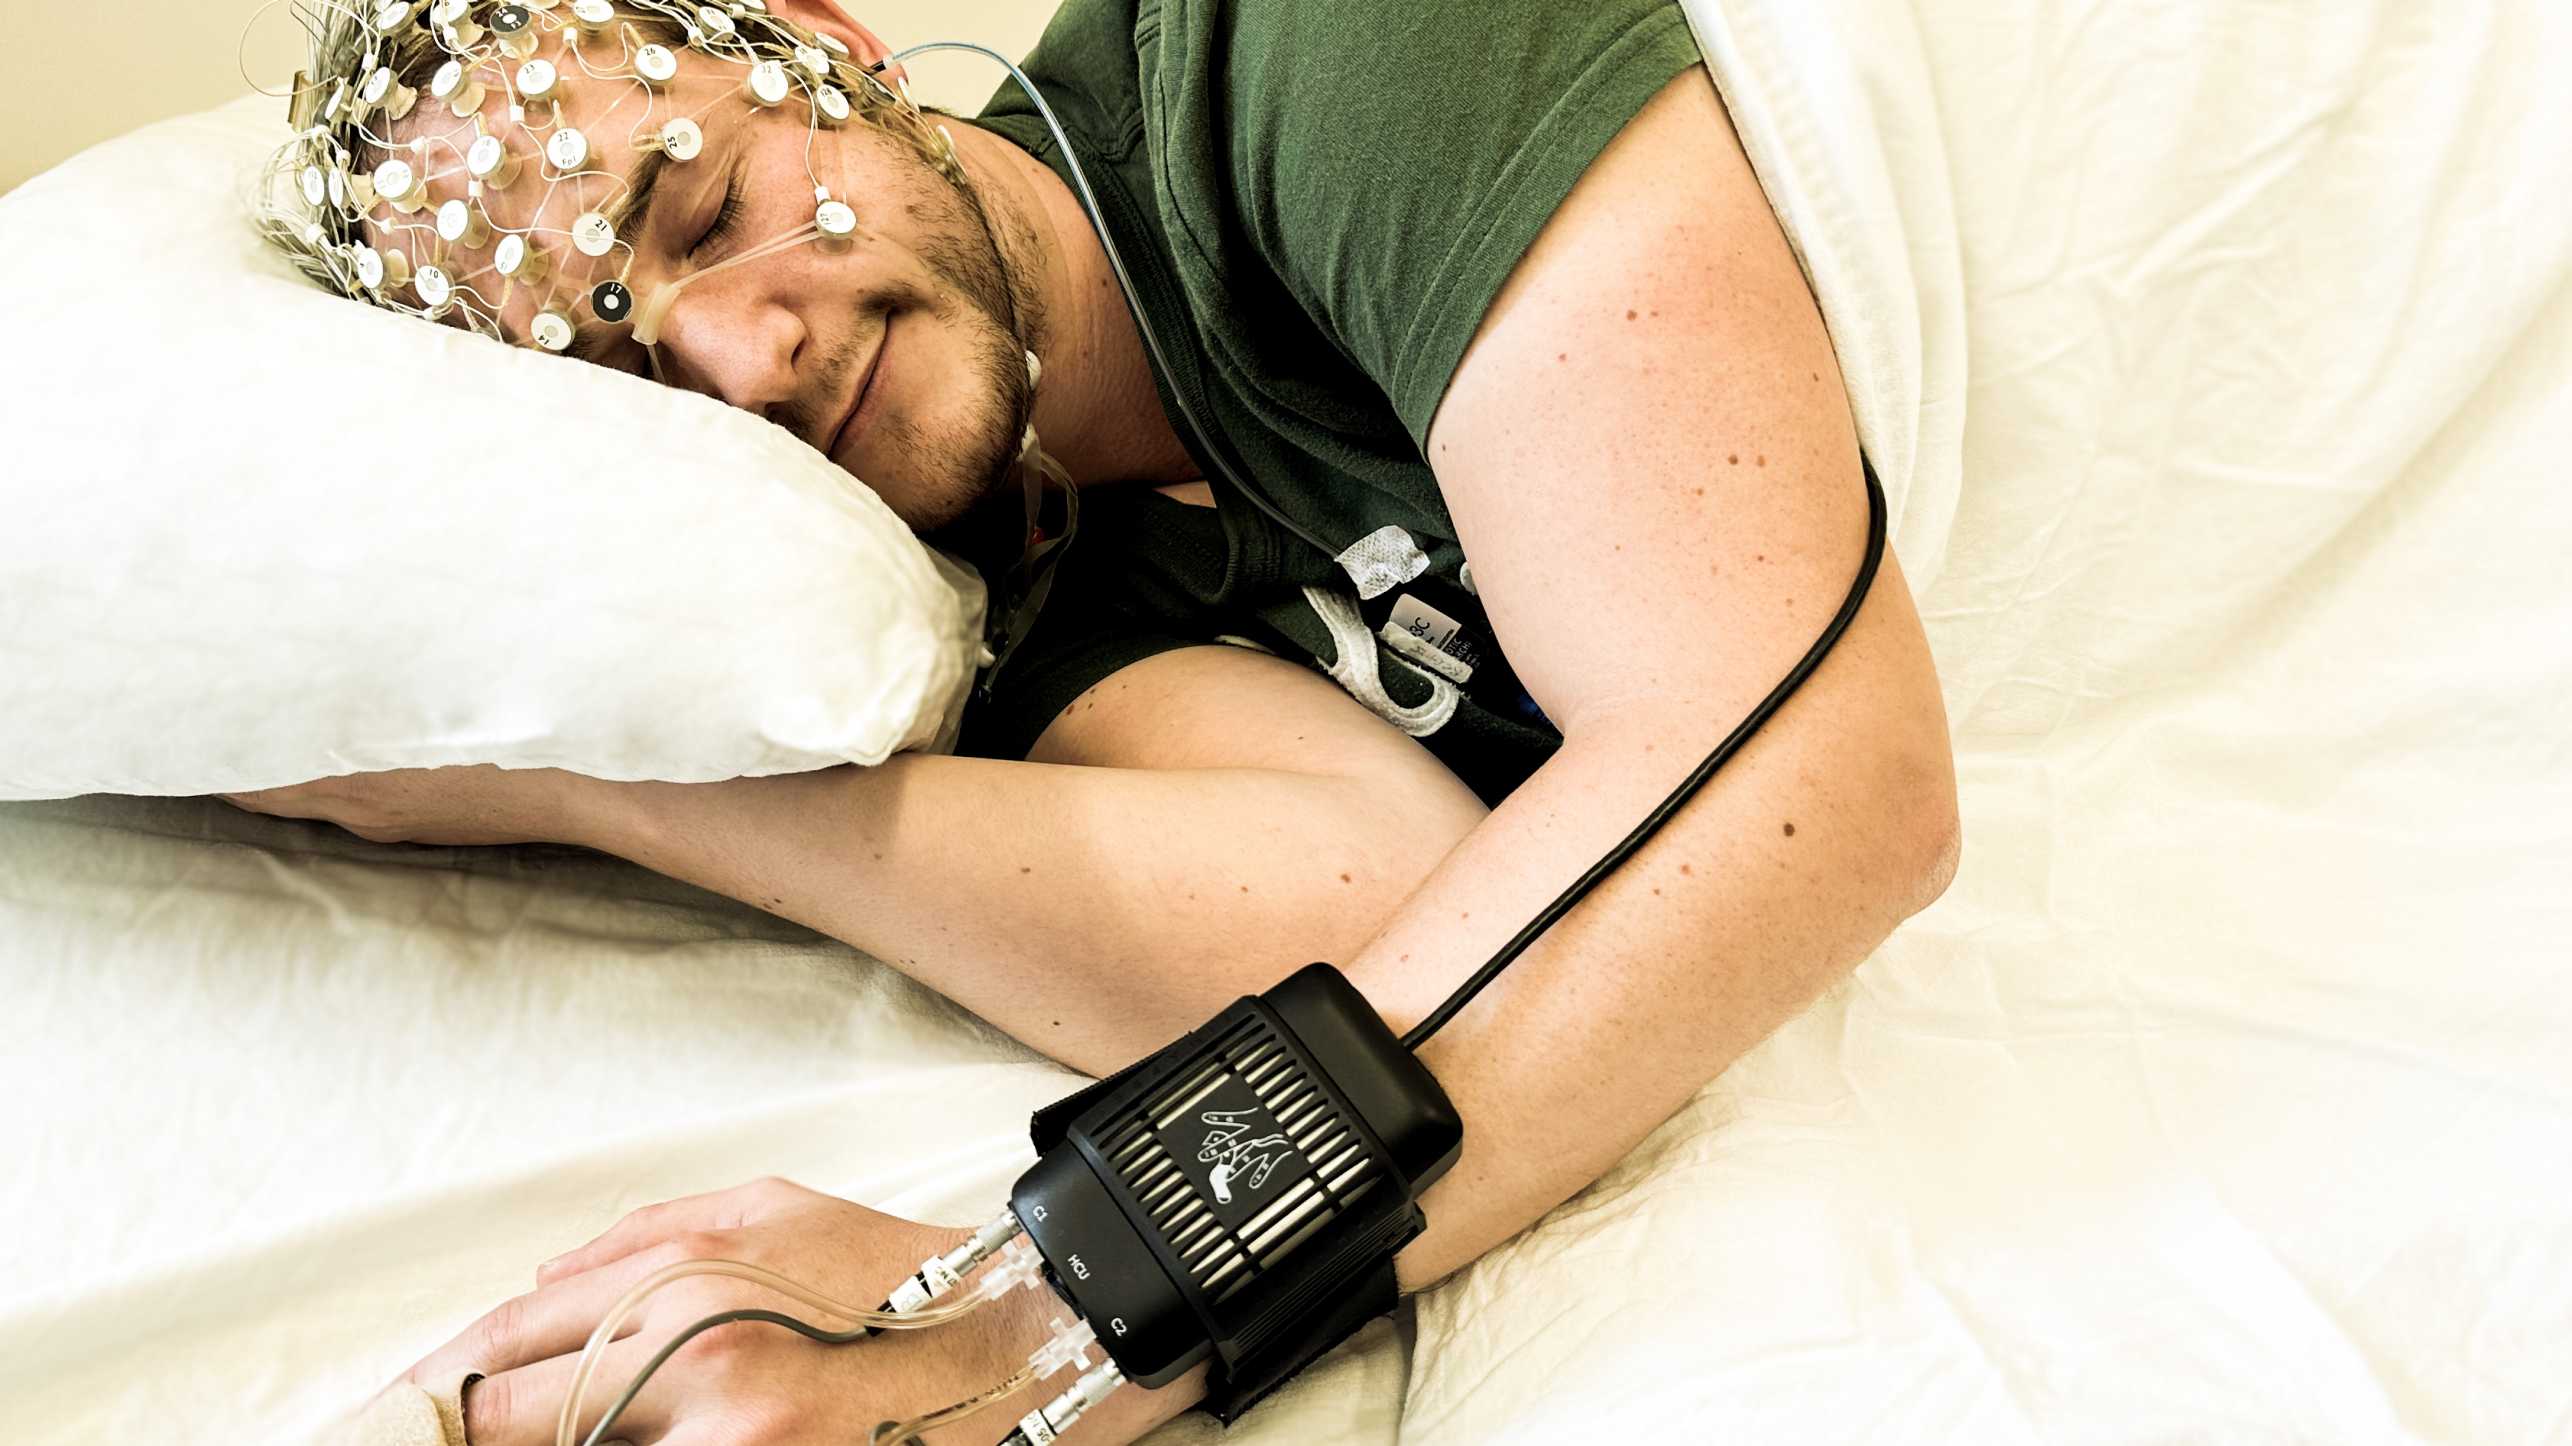 Mann liegt im Bett, auf dem Kopf sitzen Sensoren, am Handgelenk ein Kasten mit Drähten